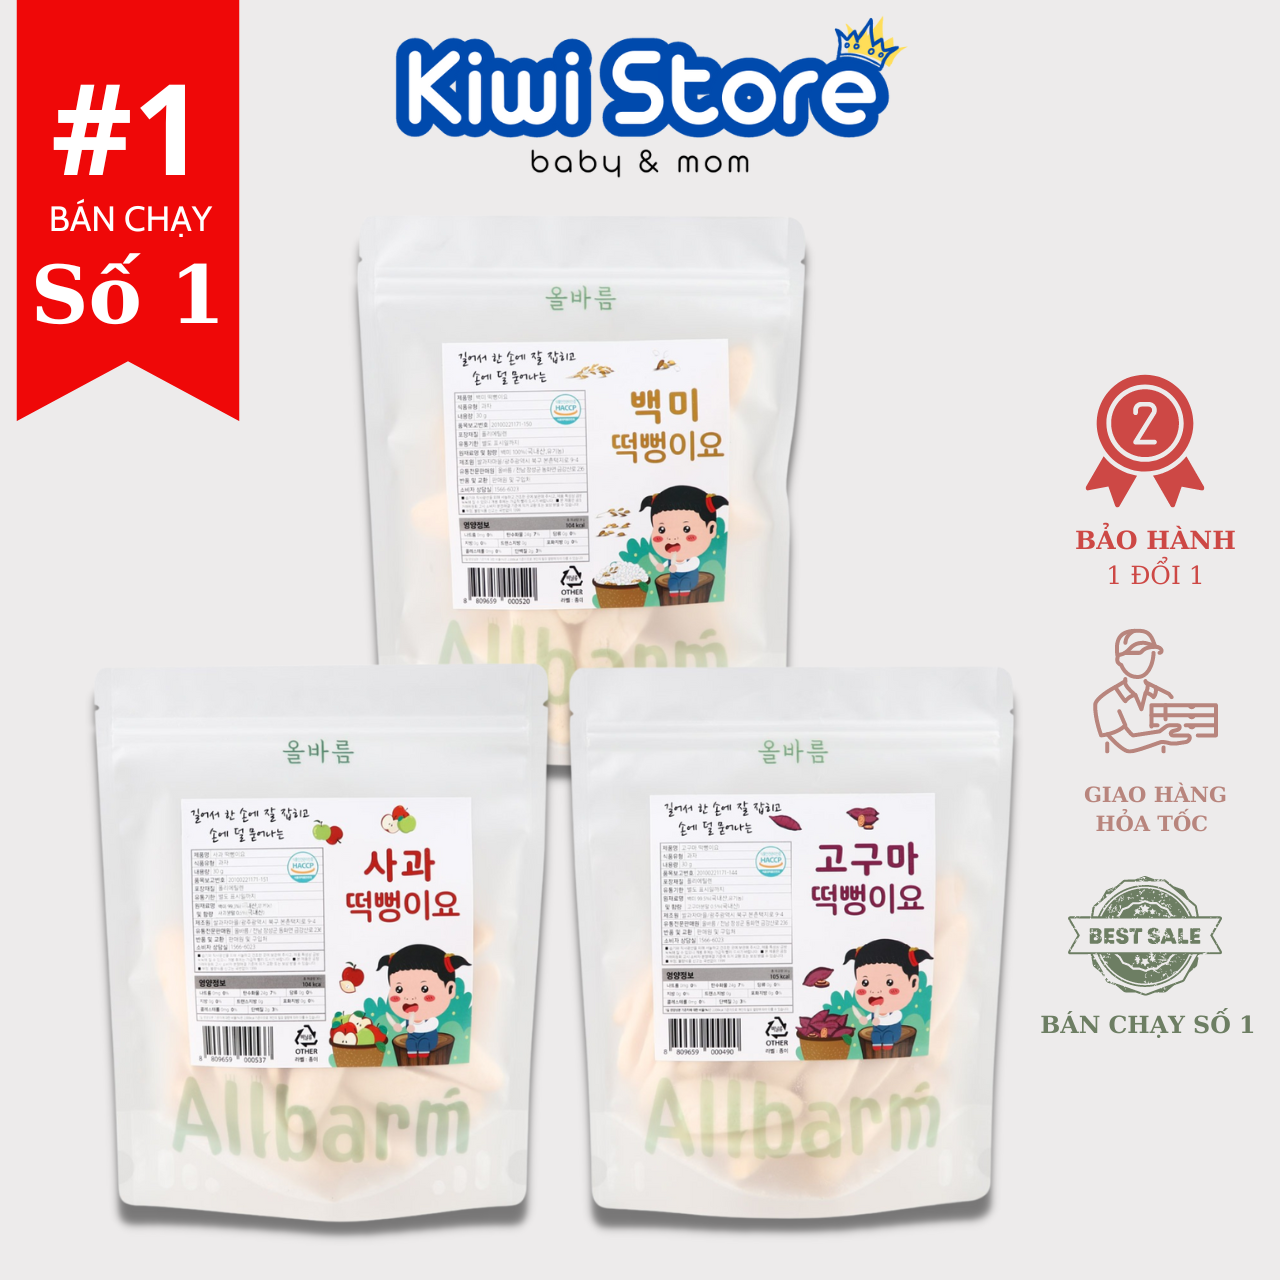 Bánh gạo ALLBARM Hàn dành cho trẻ từ 6 tháng tuổi